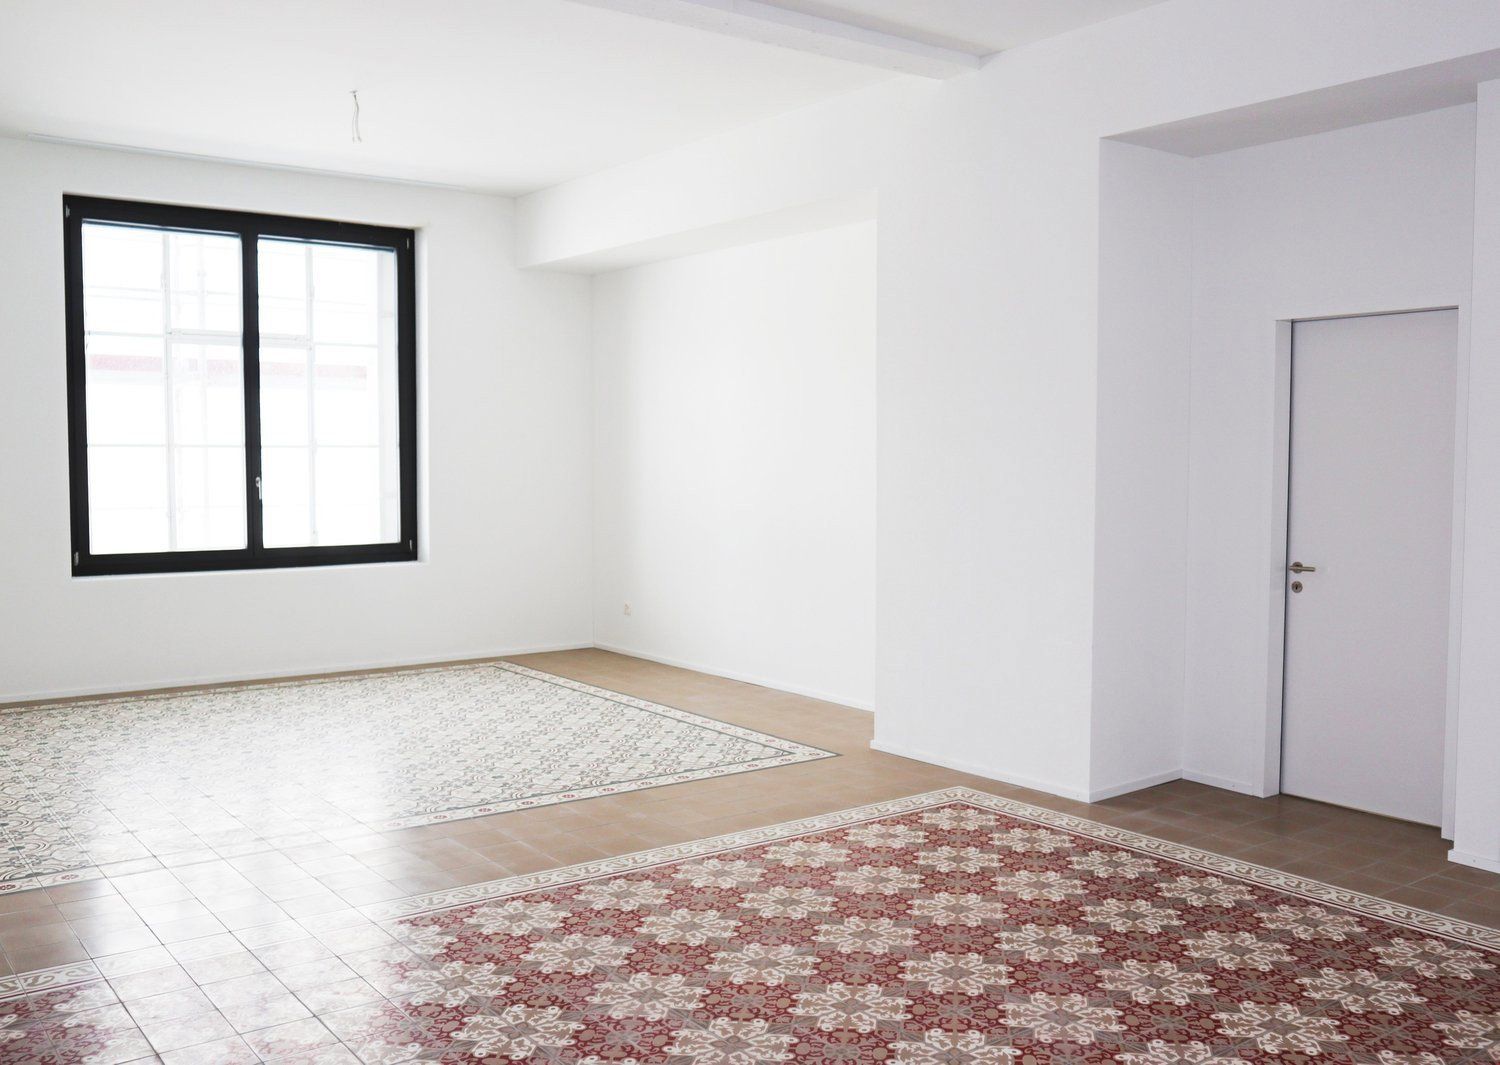 Grosszügige Wohnung mit einzigartigen Bodenplatten